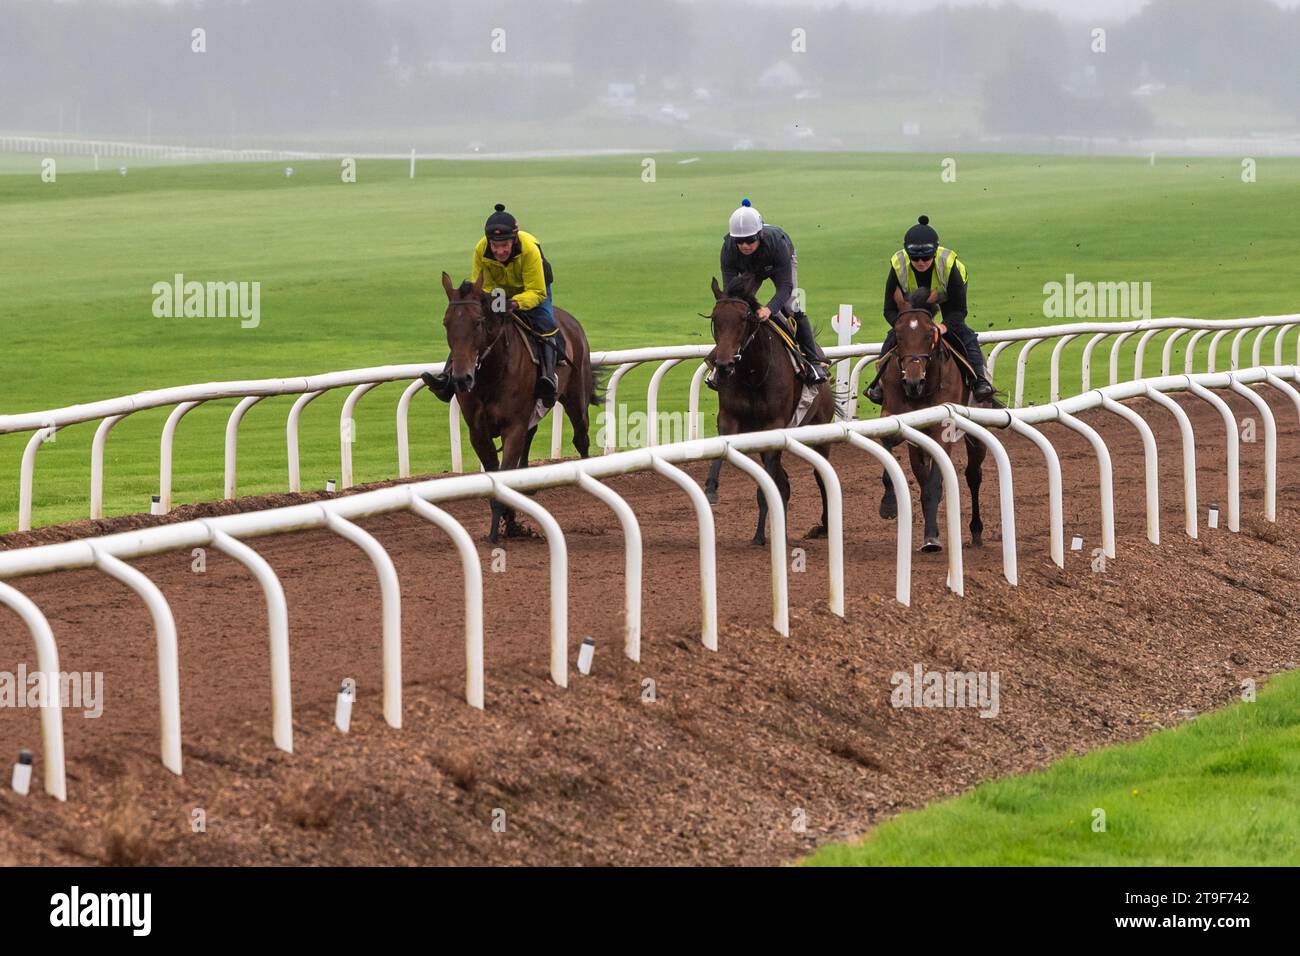 Bermingham Cameras a sponsorisé les chevaux Harty Racing qui s'entraînent au galop de Curragh, Co. Kildare, Irlande. Banque D'Images